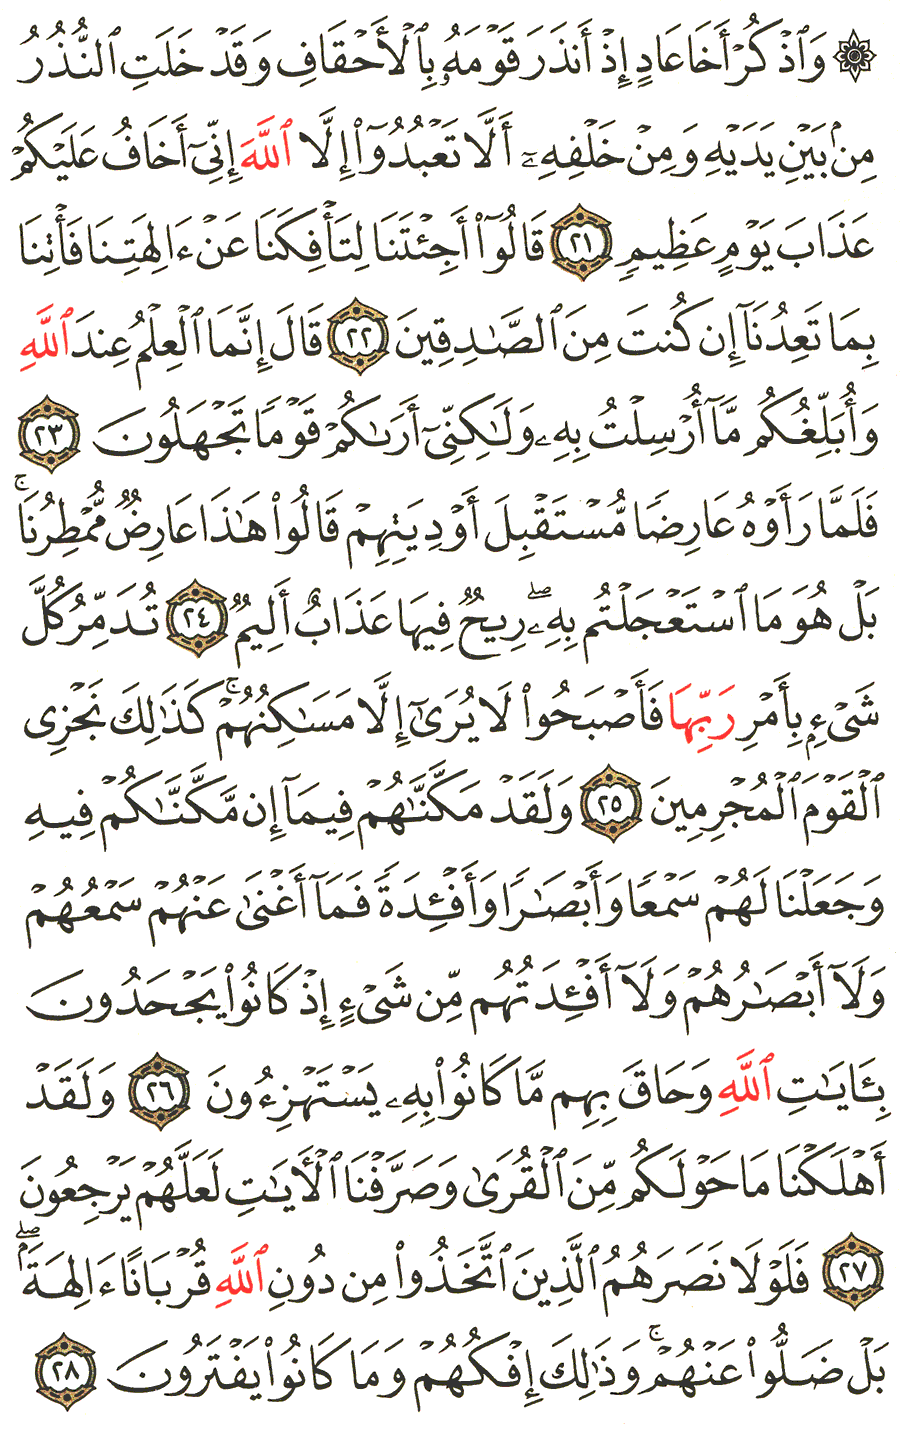 الصفحة 505 من القرآن الكريم